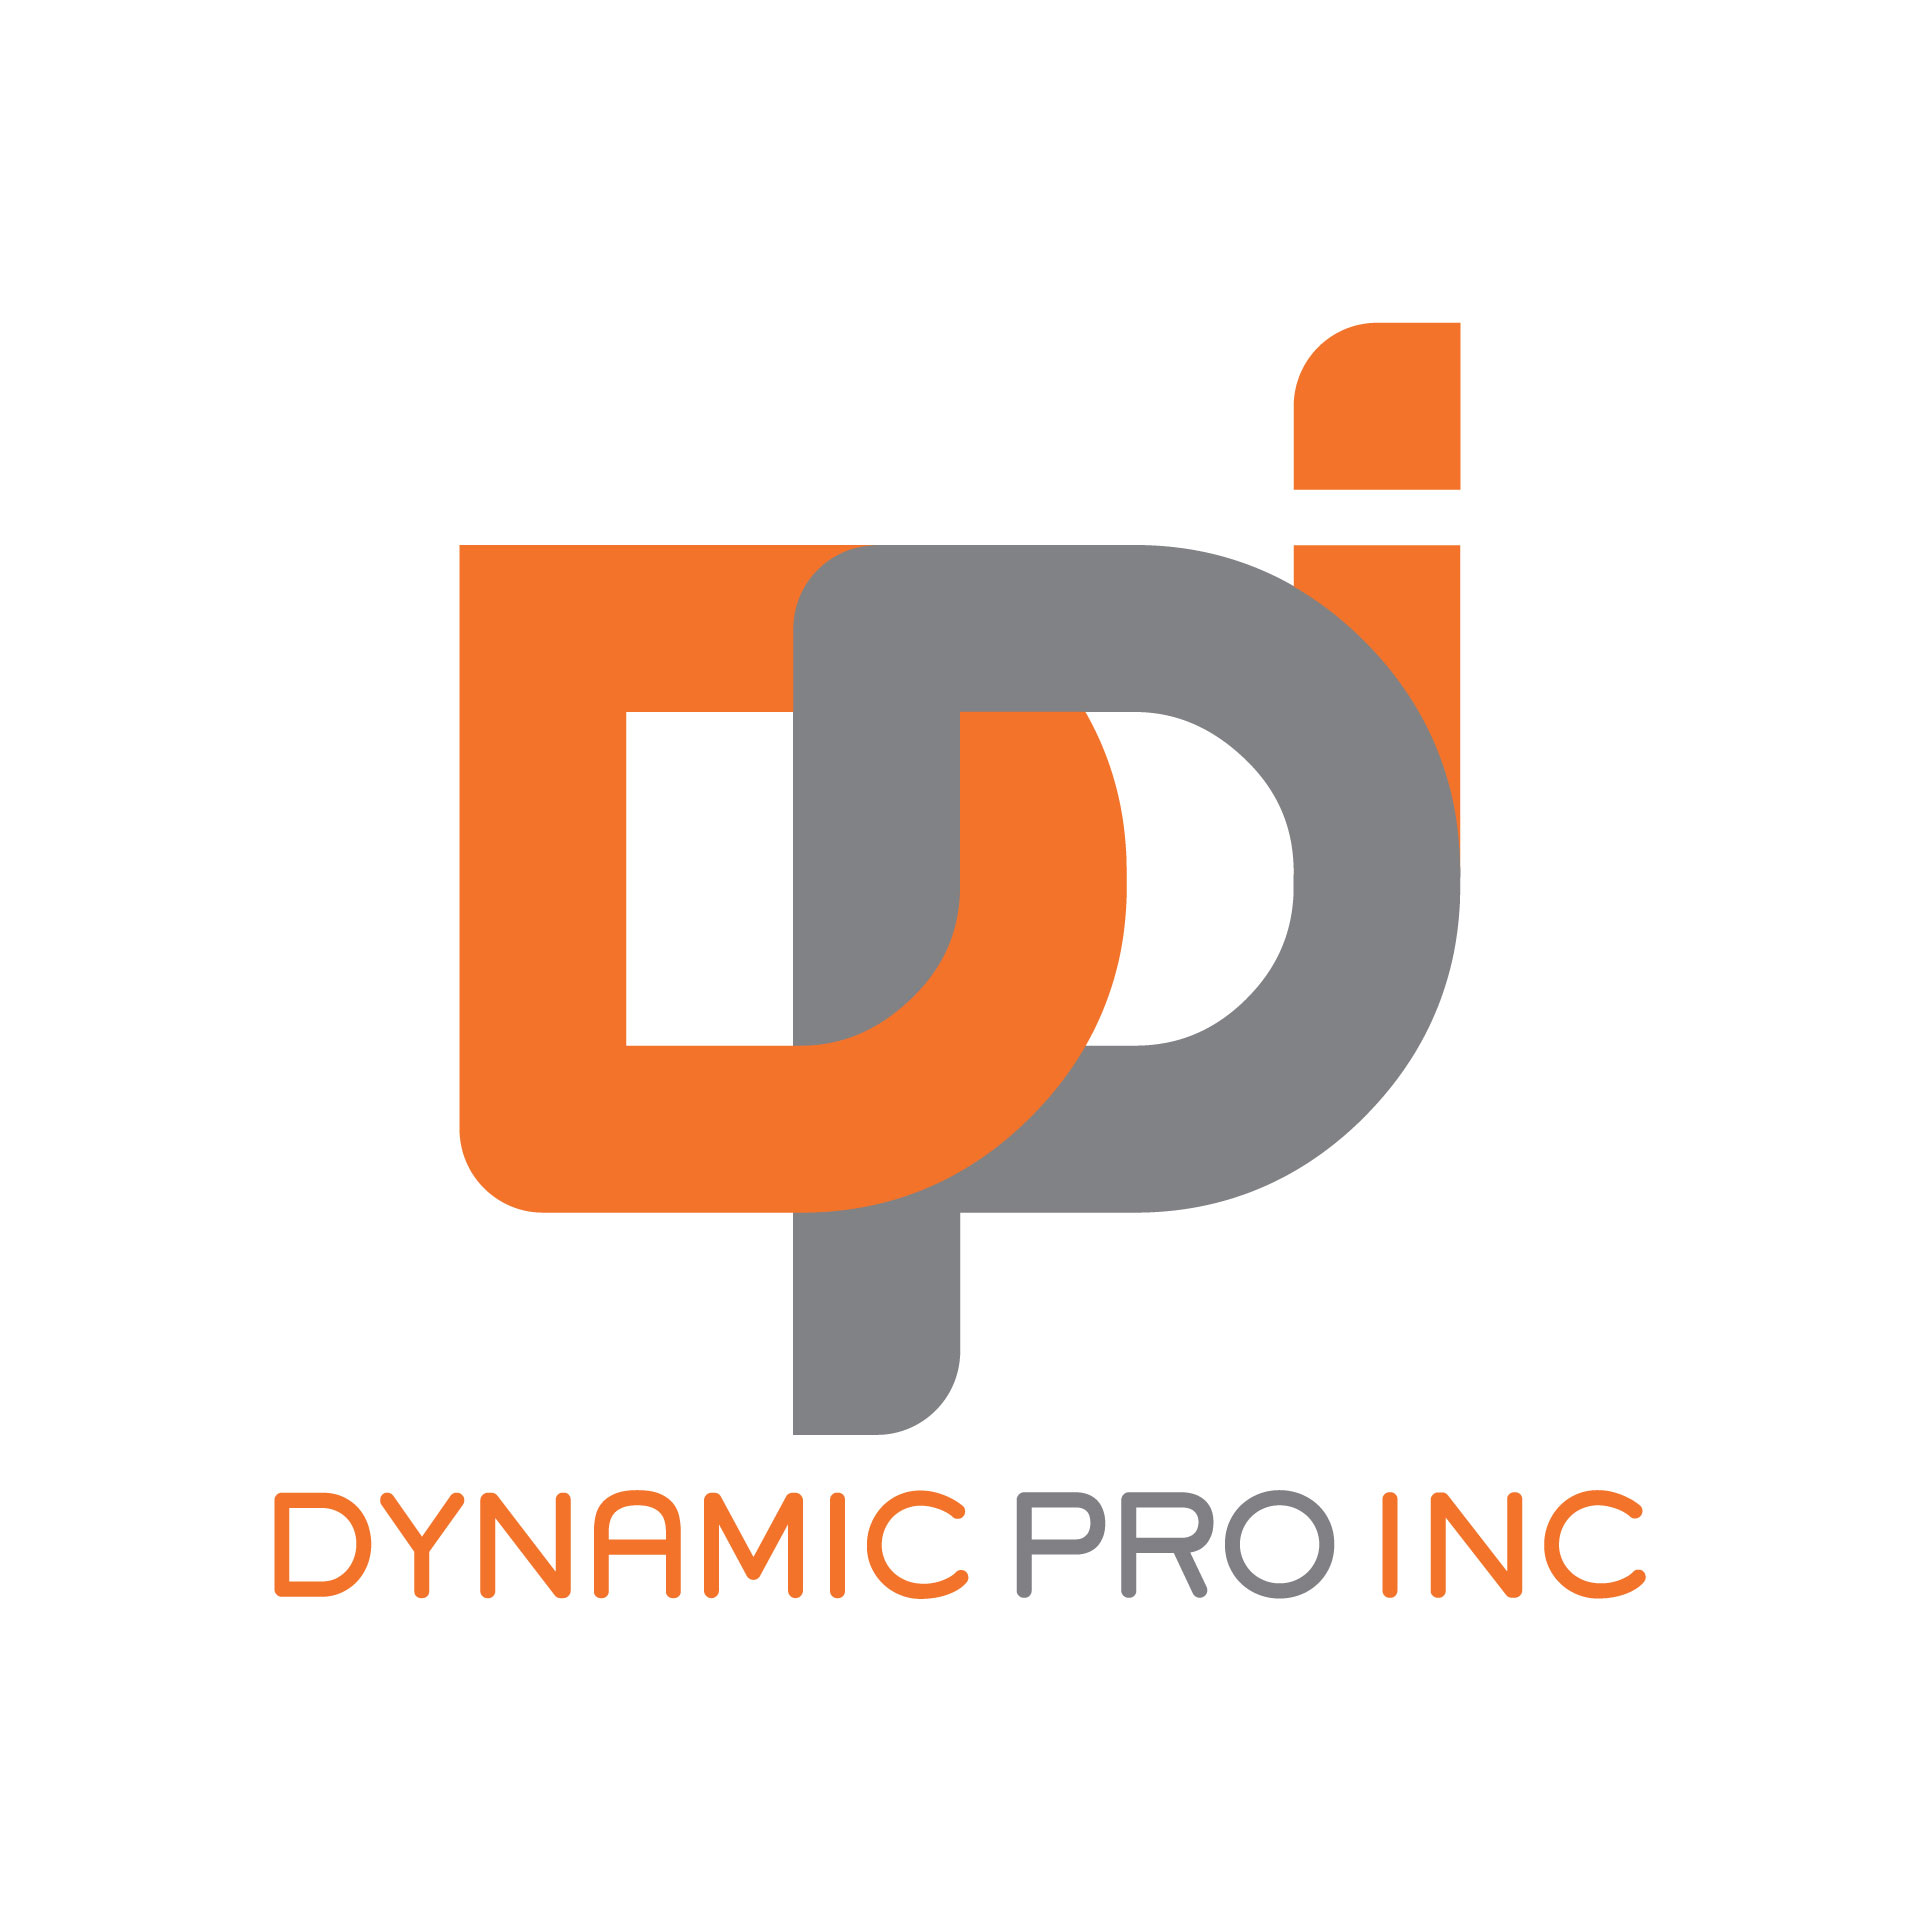 Diseño de Identidad Visual y Logotipo para la marca DYNAMIC PRO - DPI